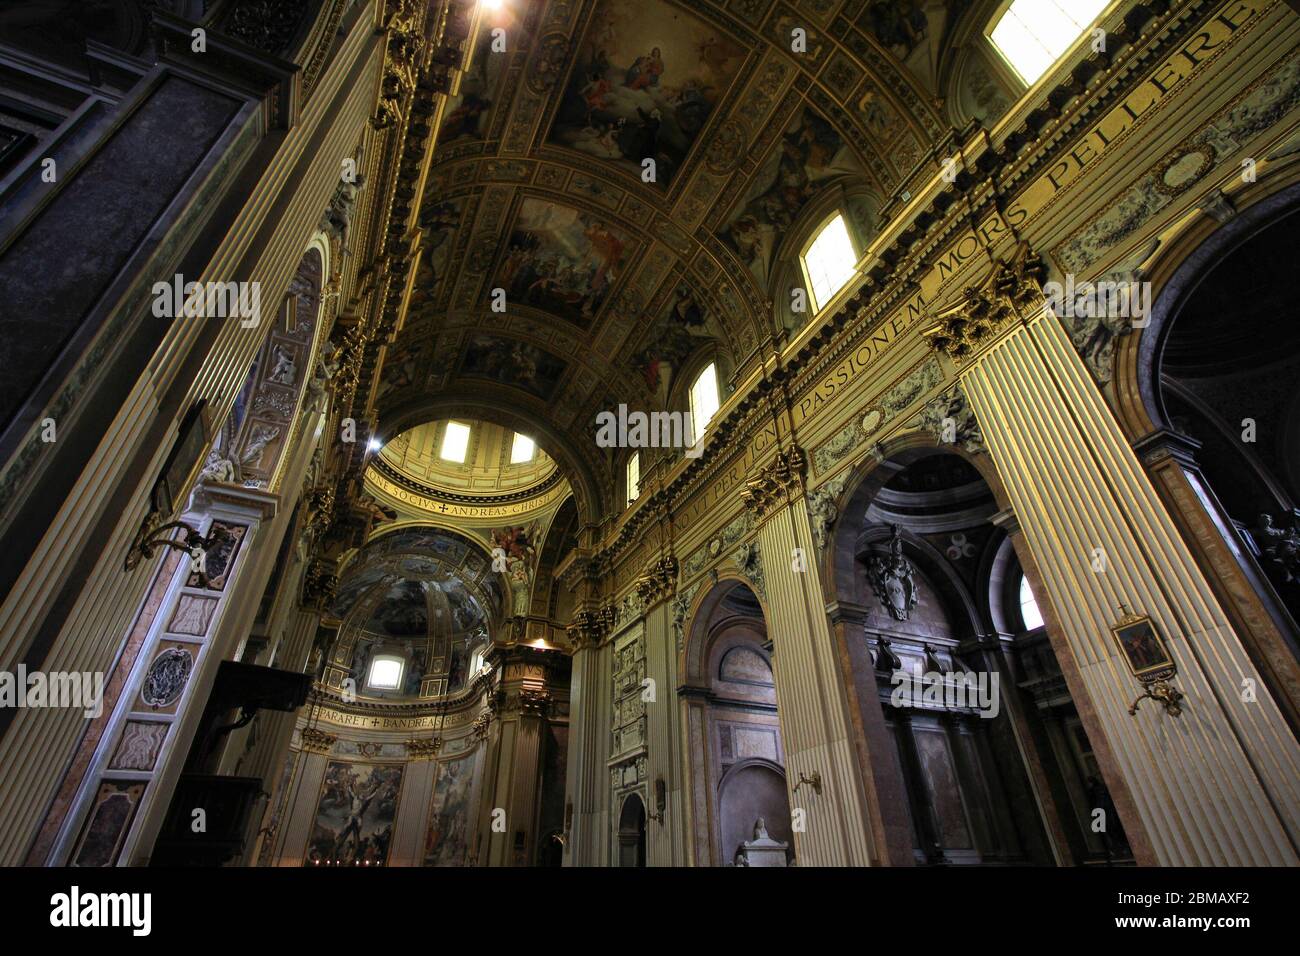 Roma, Italia - la celebre basilica di Sant'Andrea della Valle. Interno della chiesa. Foto Stock